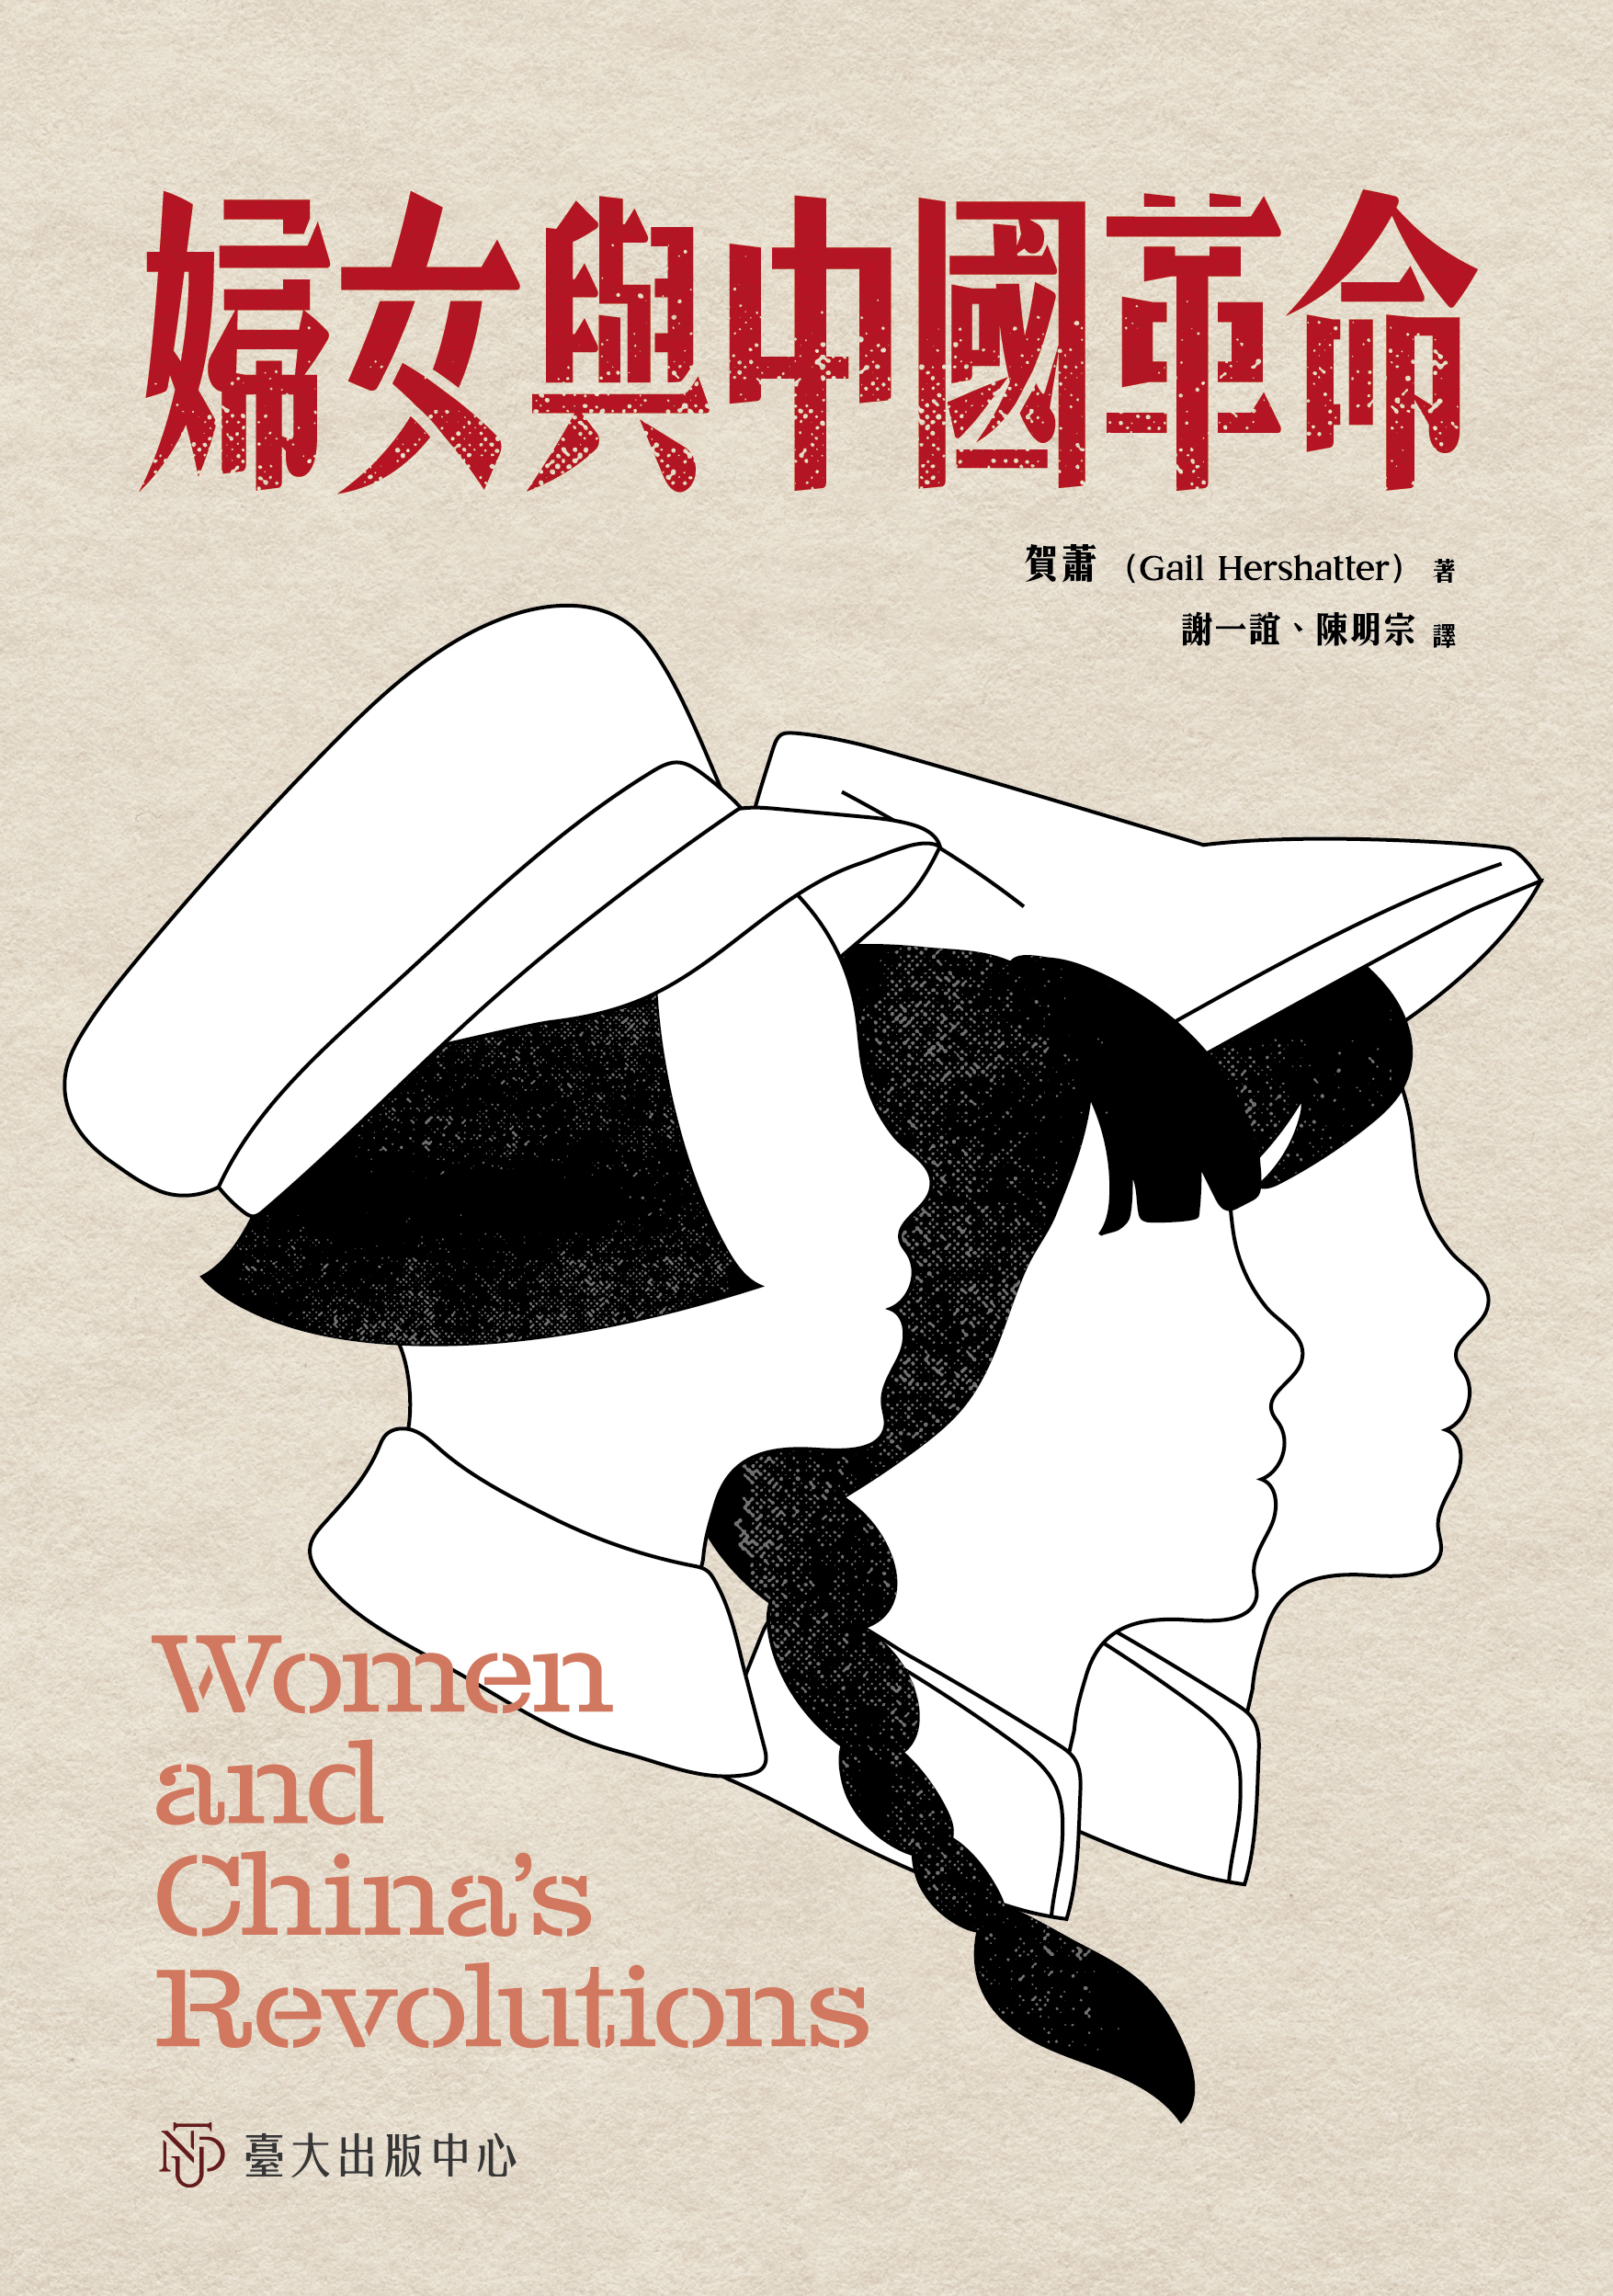 婦女與中國革命